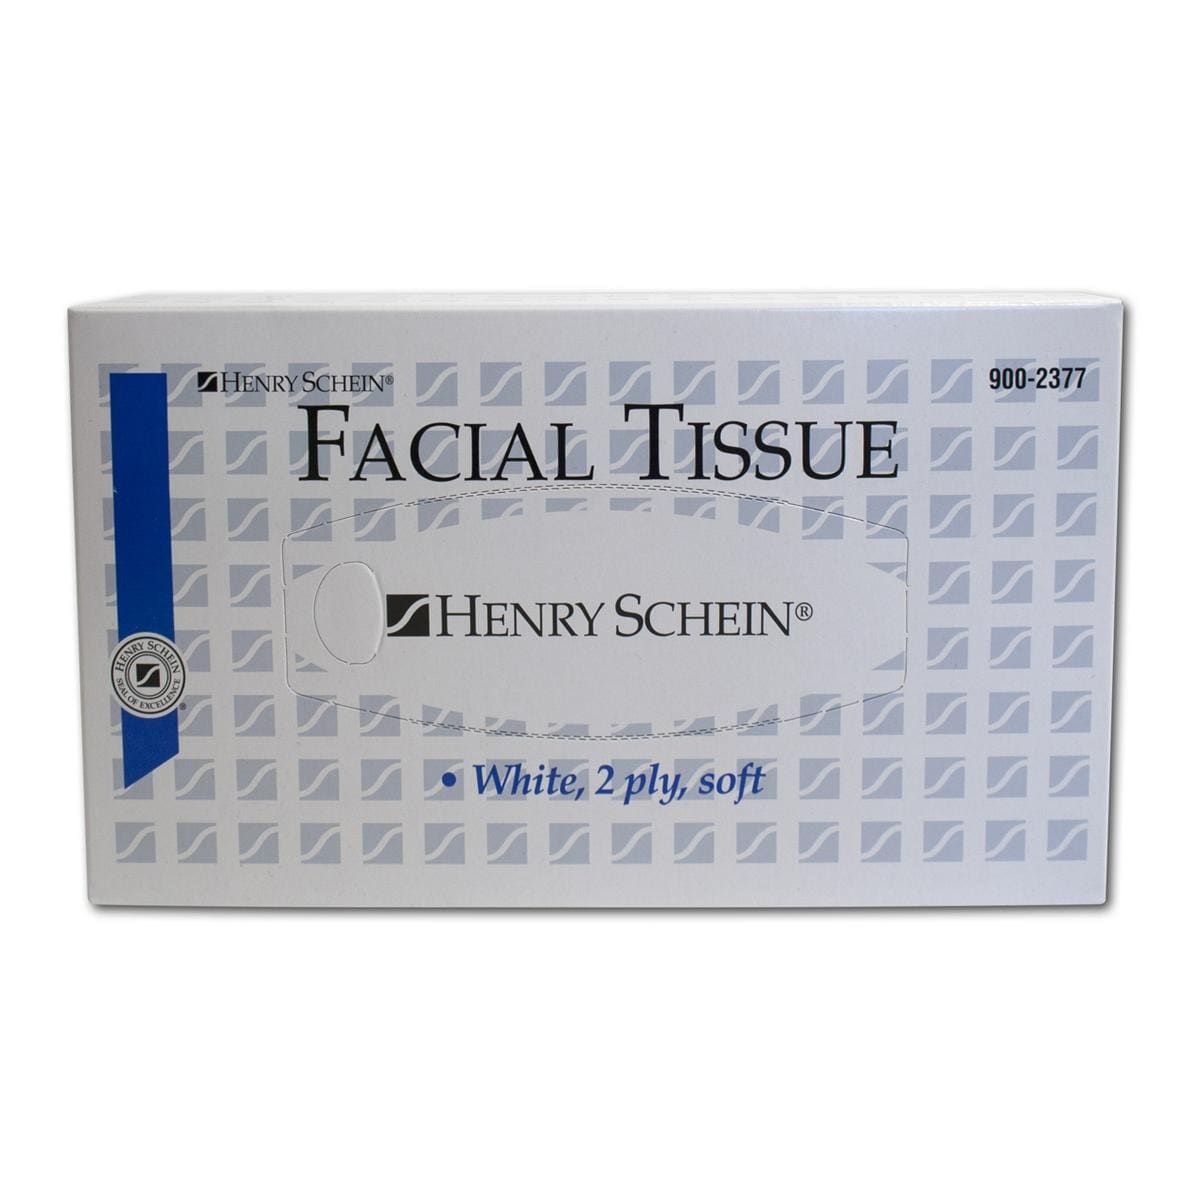 Facial Tissues - Omdoos, 30x 100 stuks